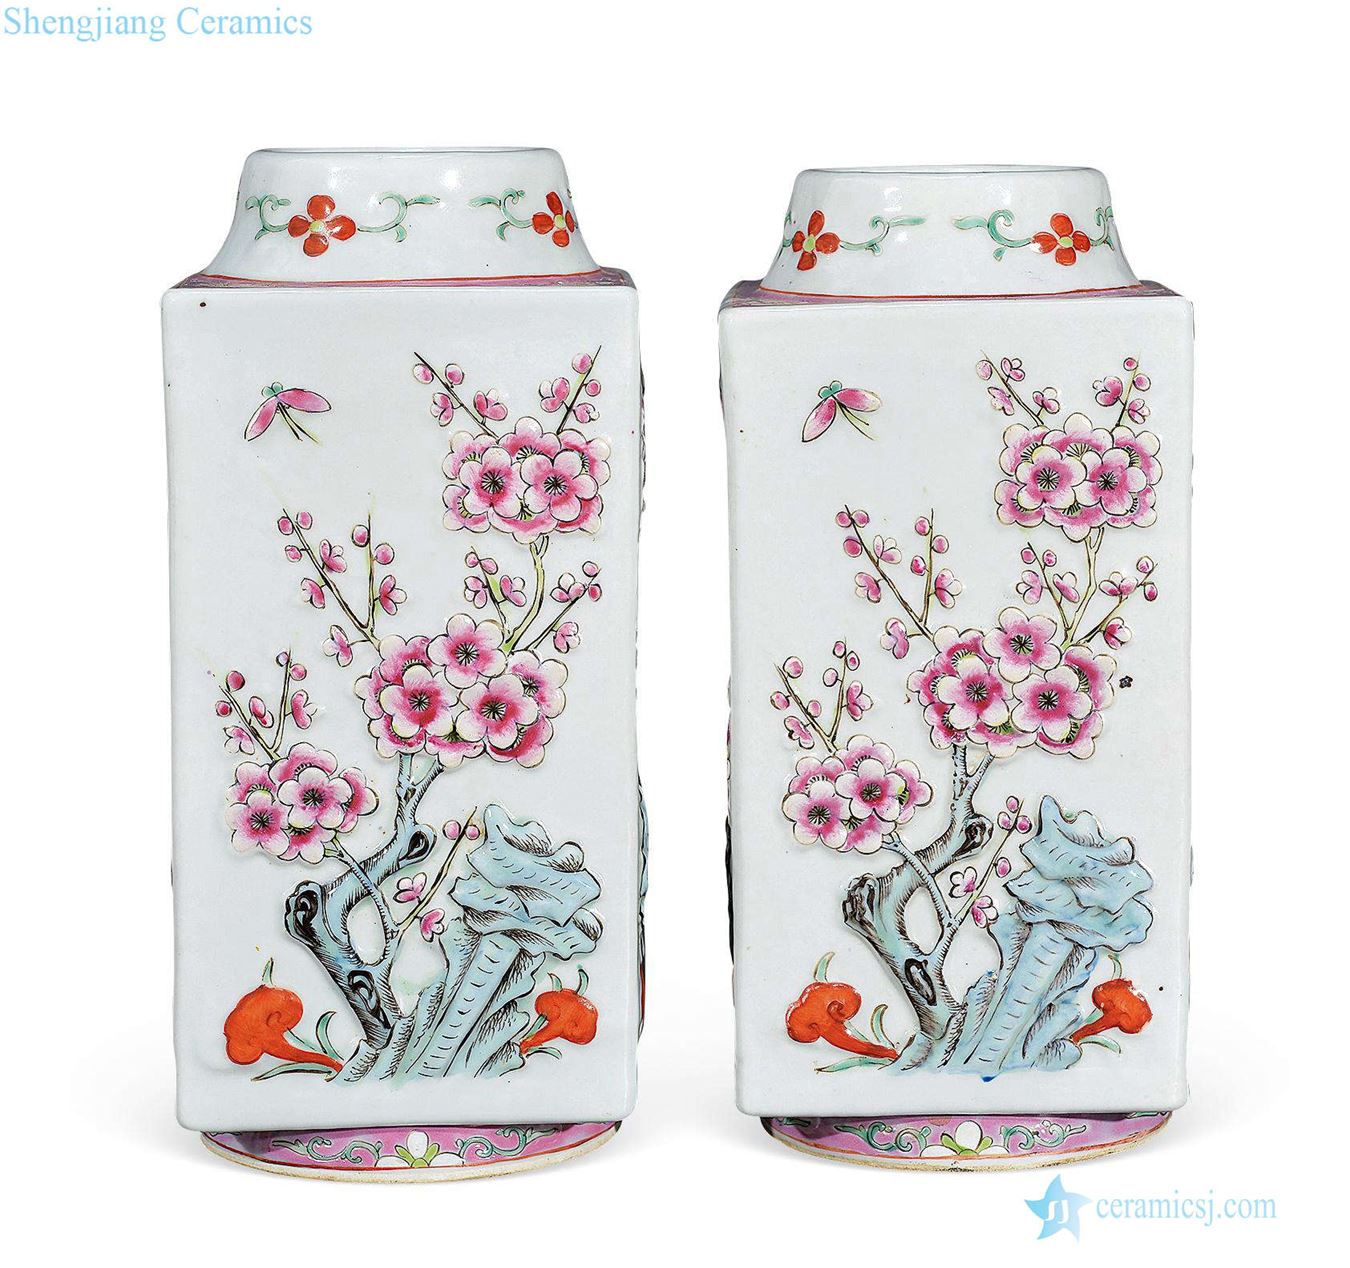 Qing guangxu Carved porcelain enamel plum flower vase (a)